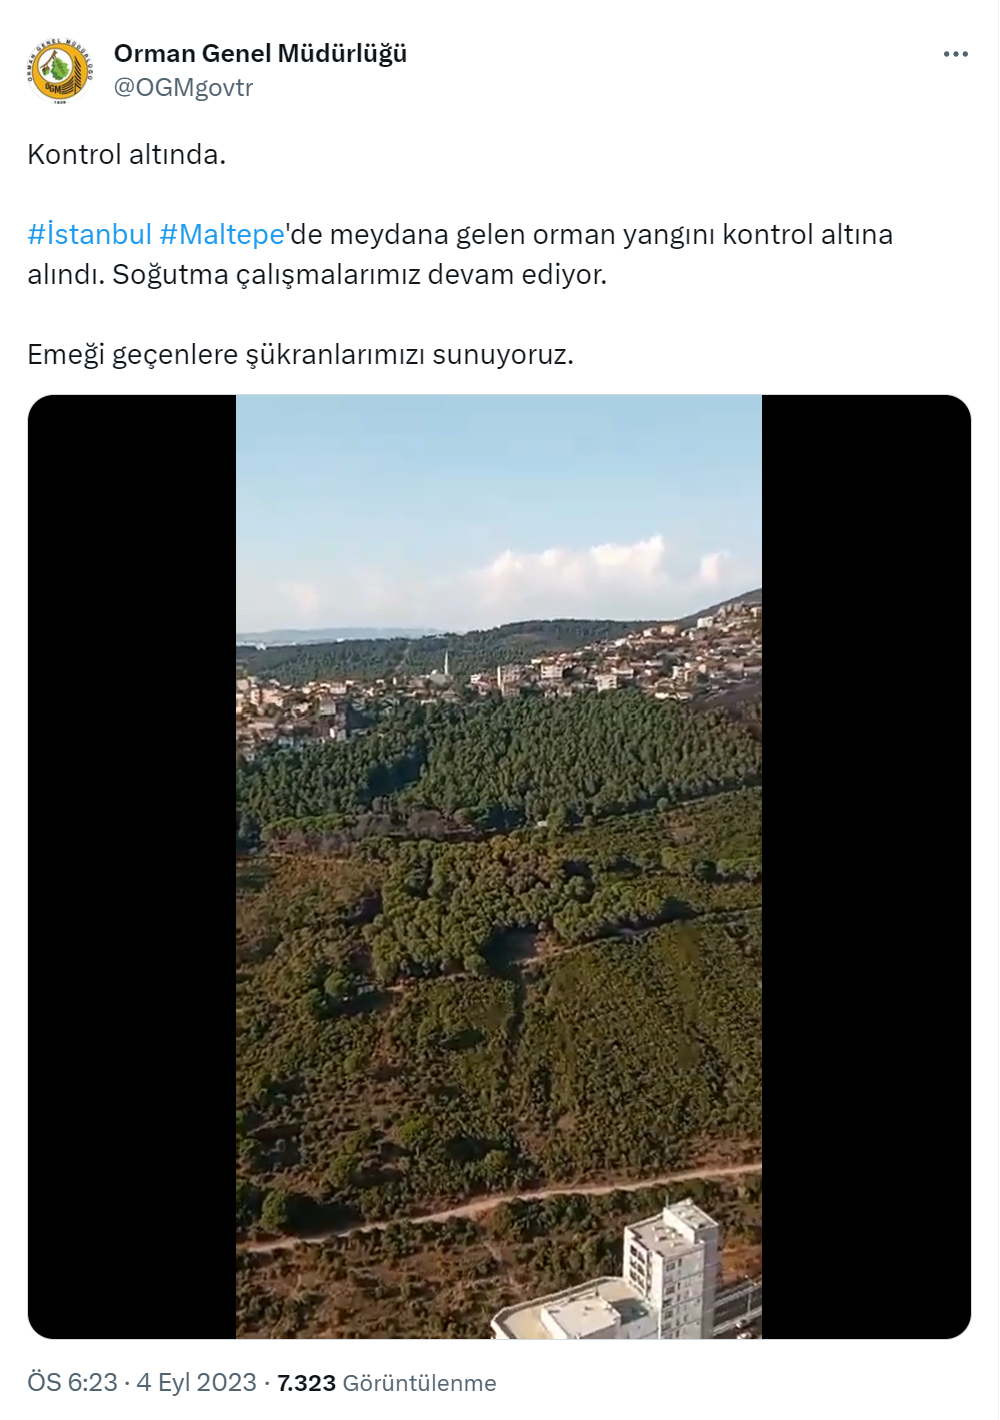 İstanbul Maltepe’deki orman yangını kontrol altına alındı